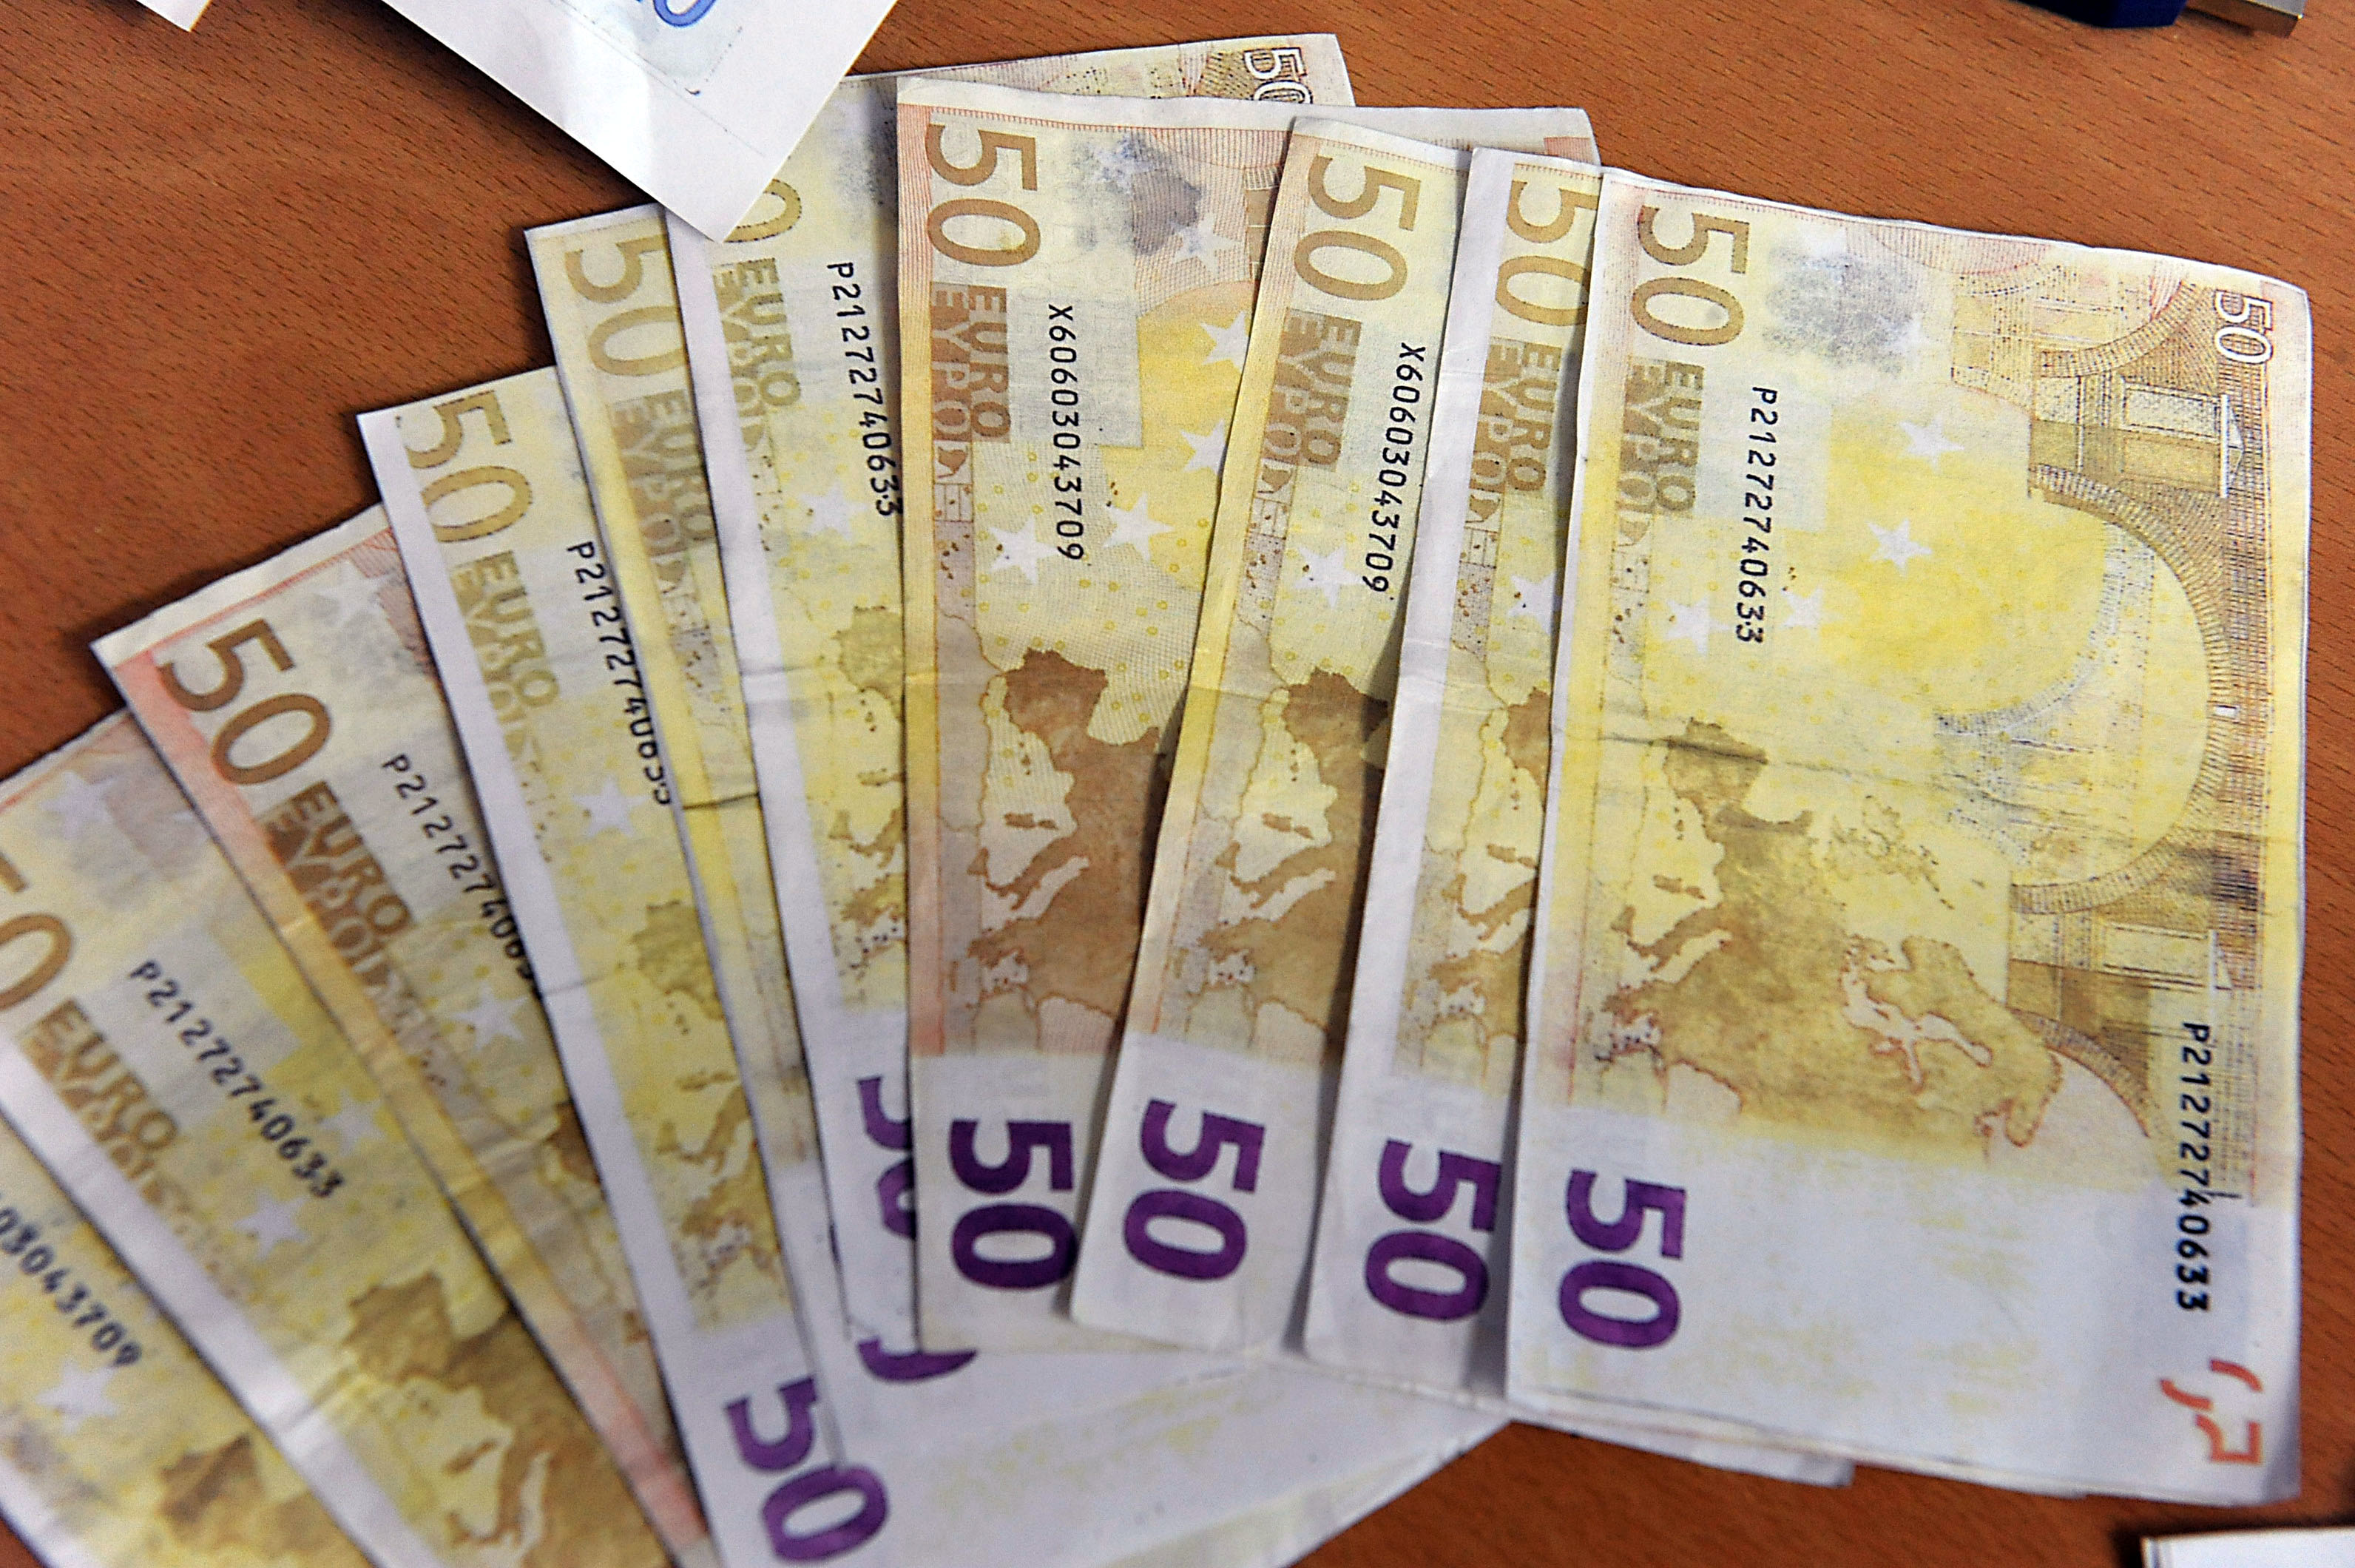 Συναλλαγές με πλαστά ευρώ έκαναν δύο 16χρονοι στη Ρόδο